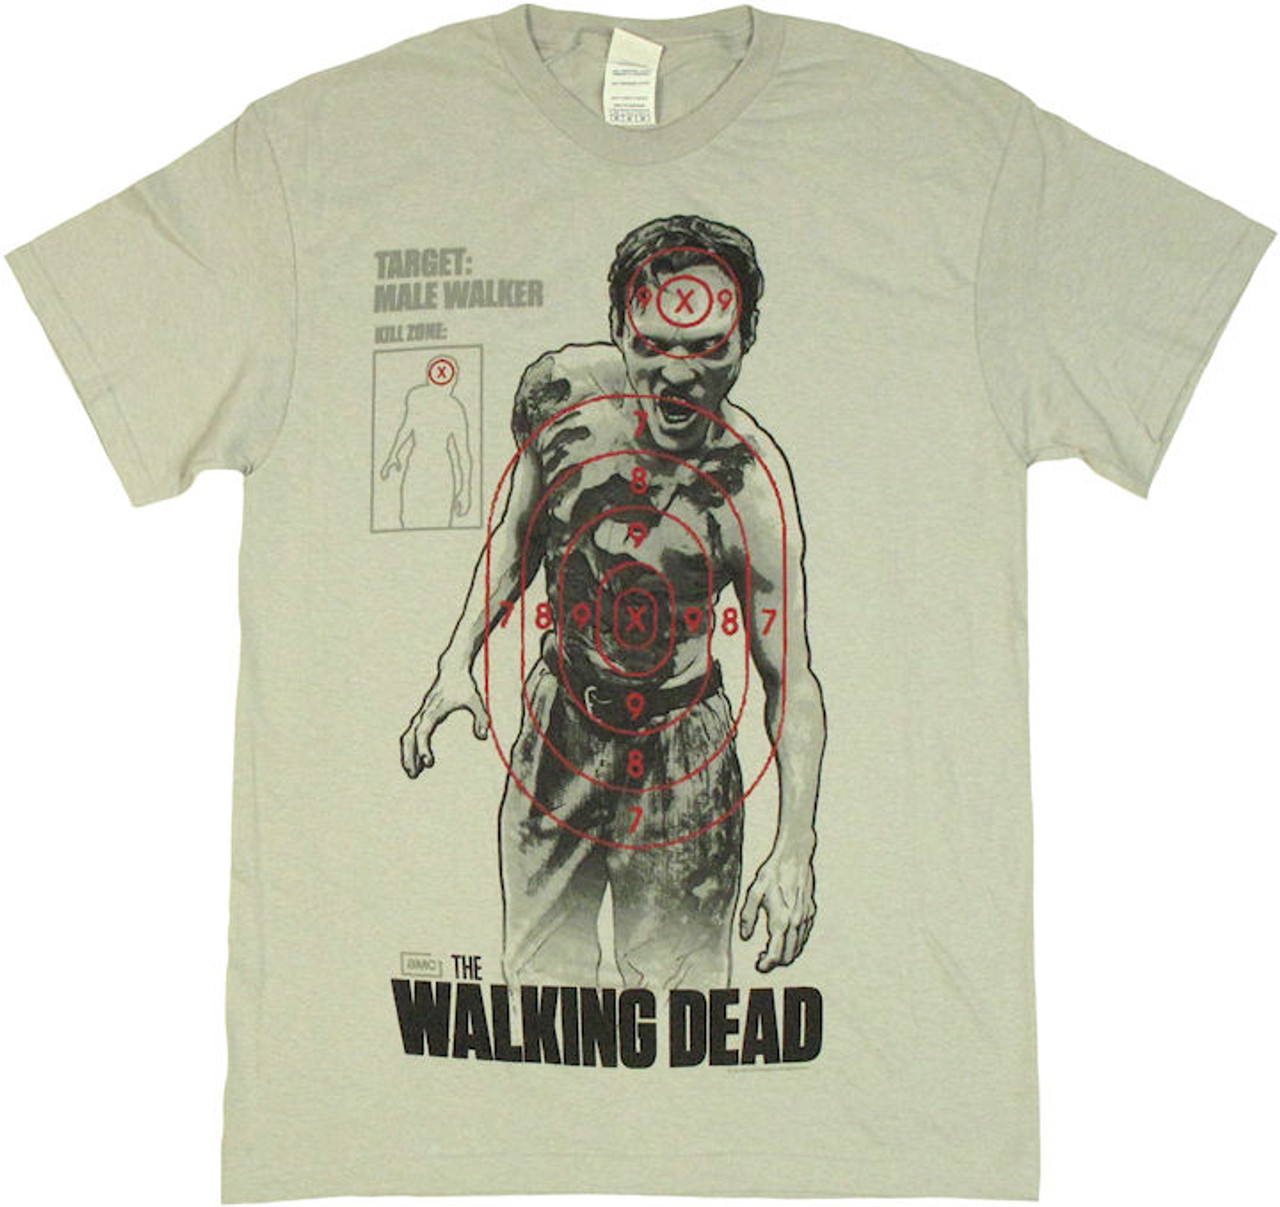 Shop The Walking Dead Merchandise